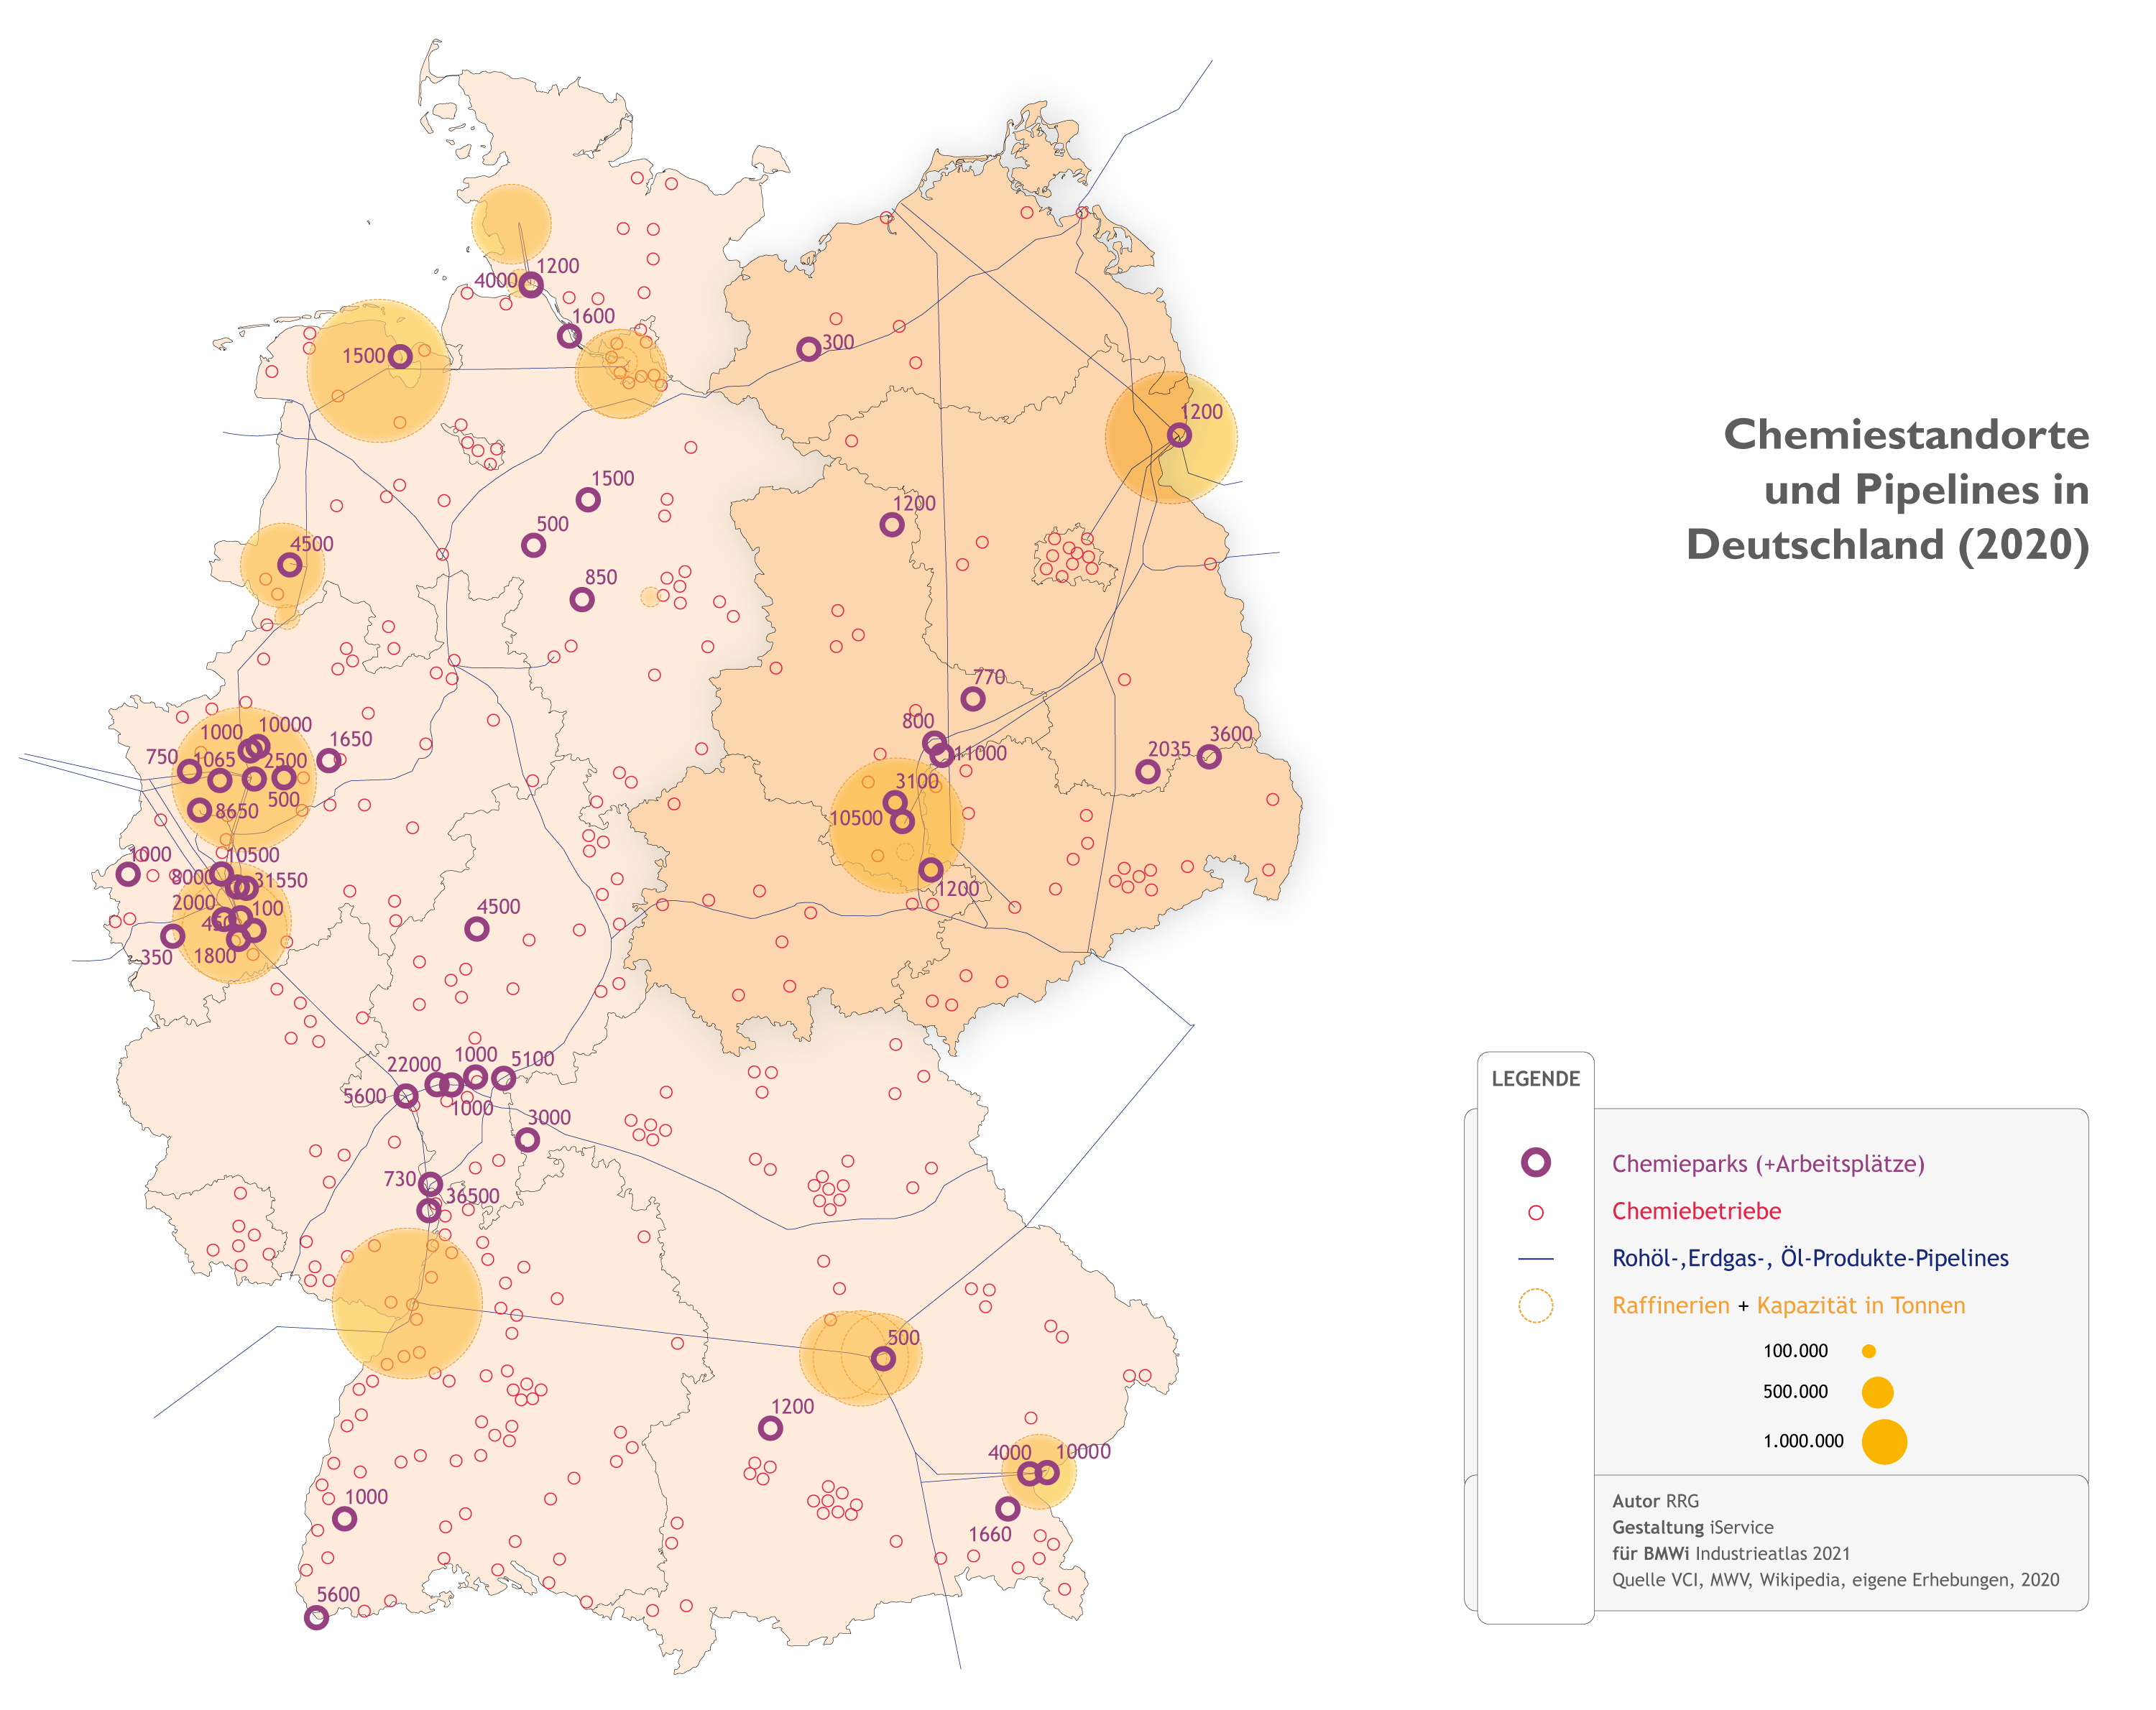 Chemiestandorte und Pipelines in Deutschland (2020)